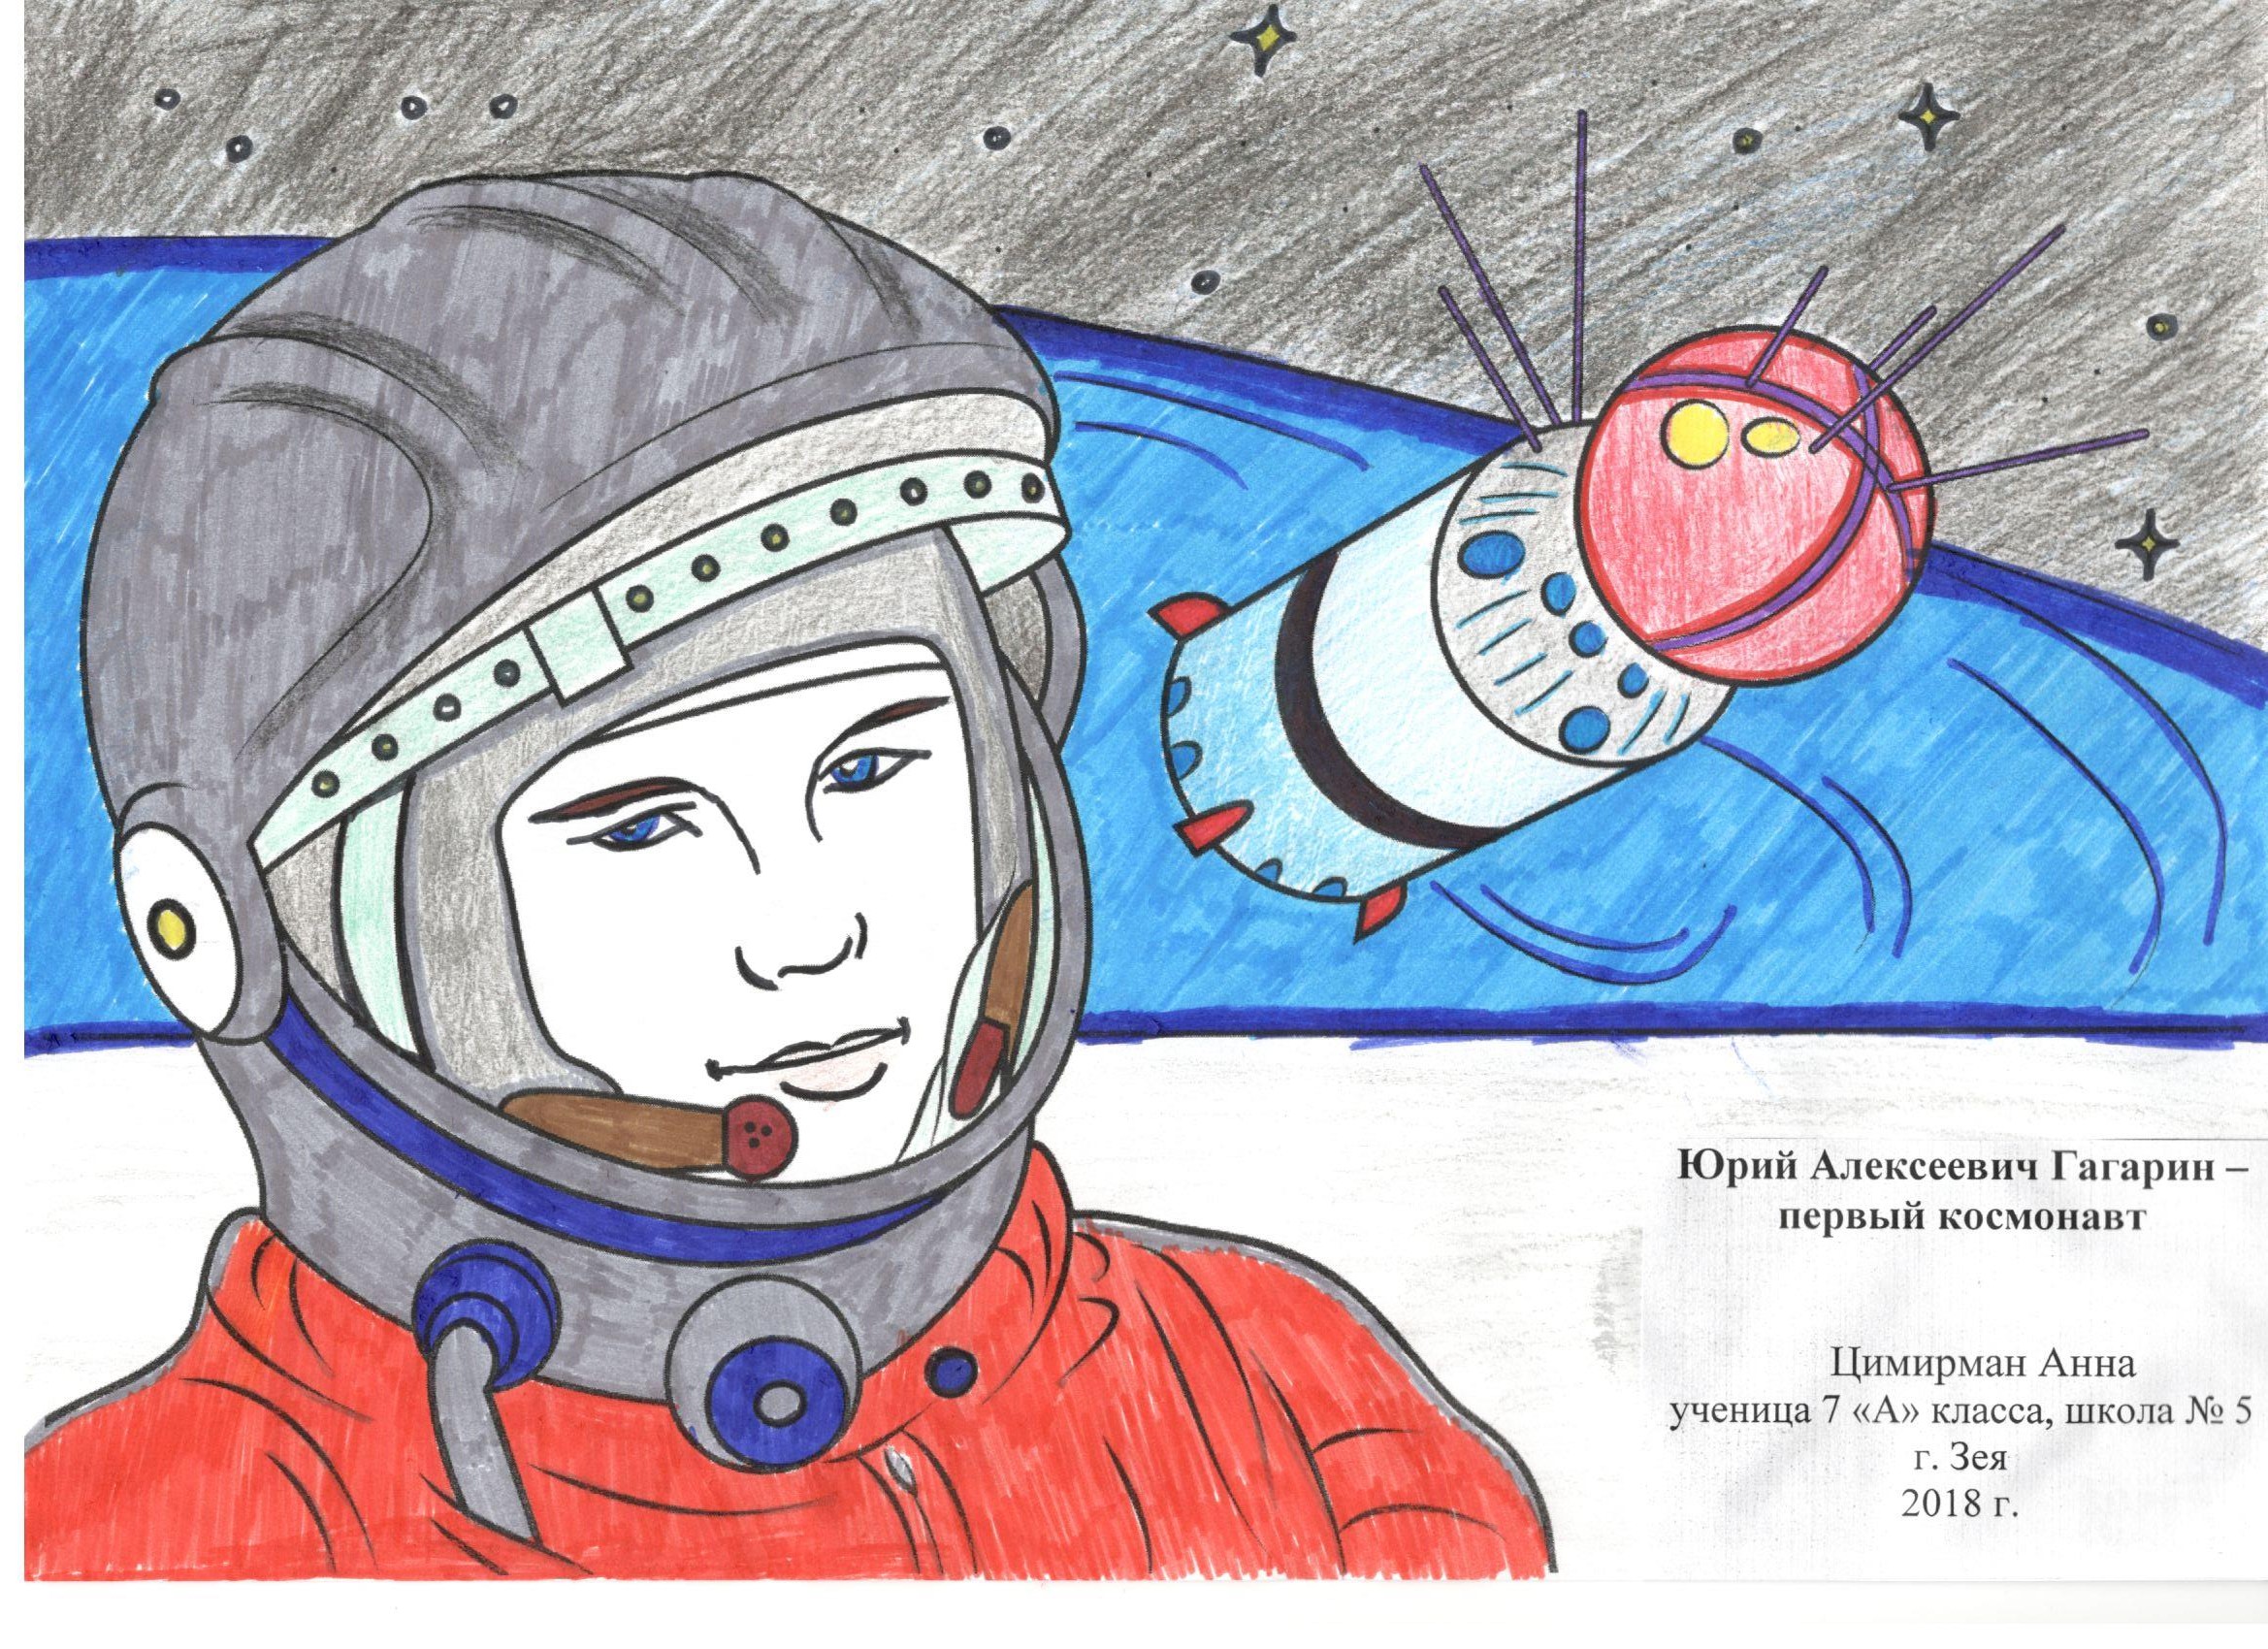 А семикласниця Аня з Зеї запропонувала викарбувати на сувенірній монеті першого космонавта Юрія Гагаріна і навіть намалювала свій ескіз